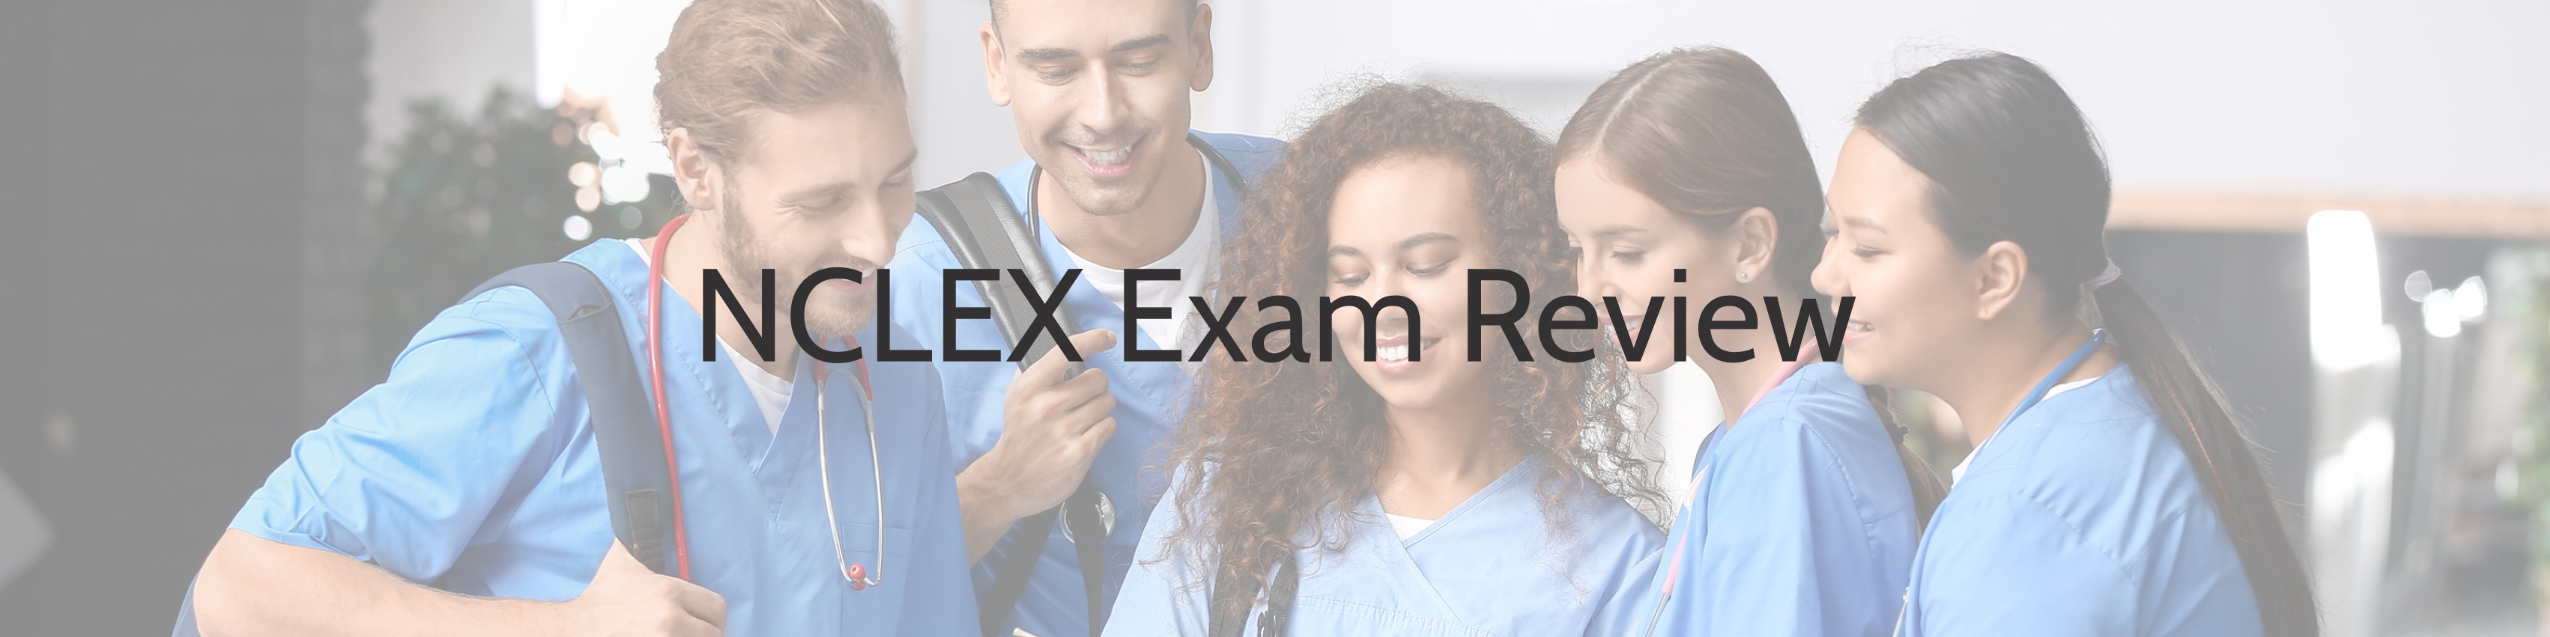 NCLEX Exam Review